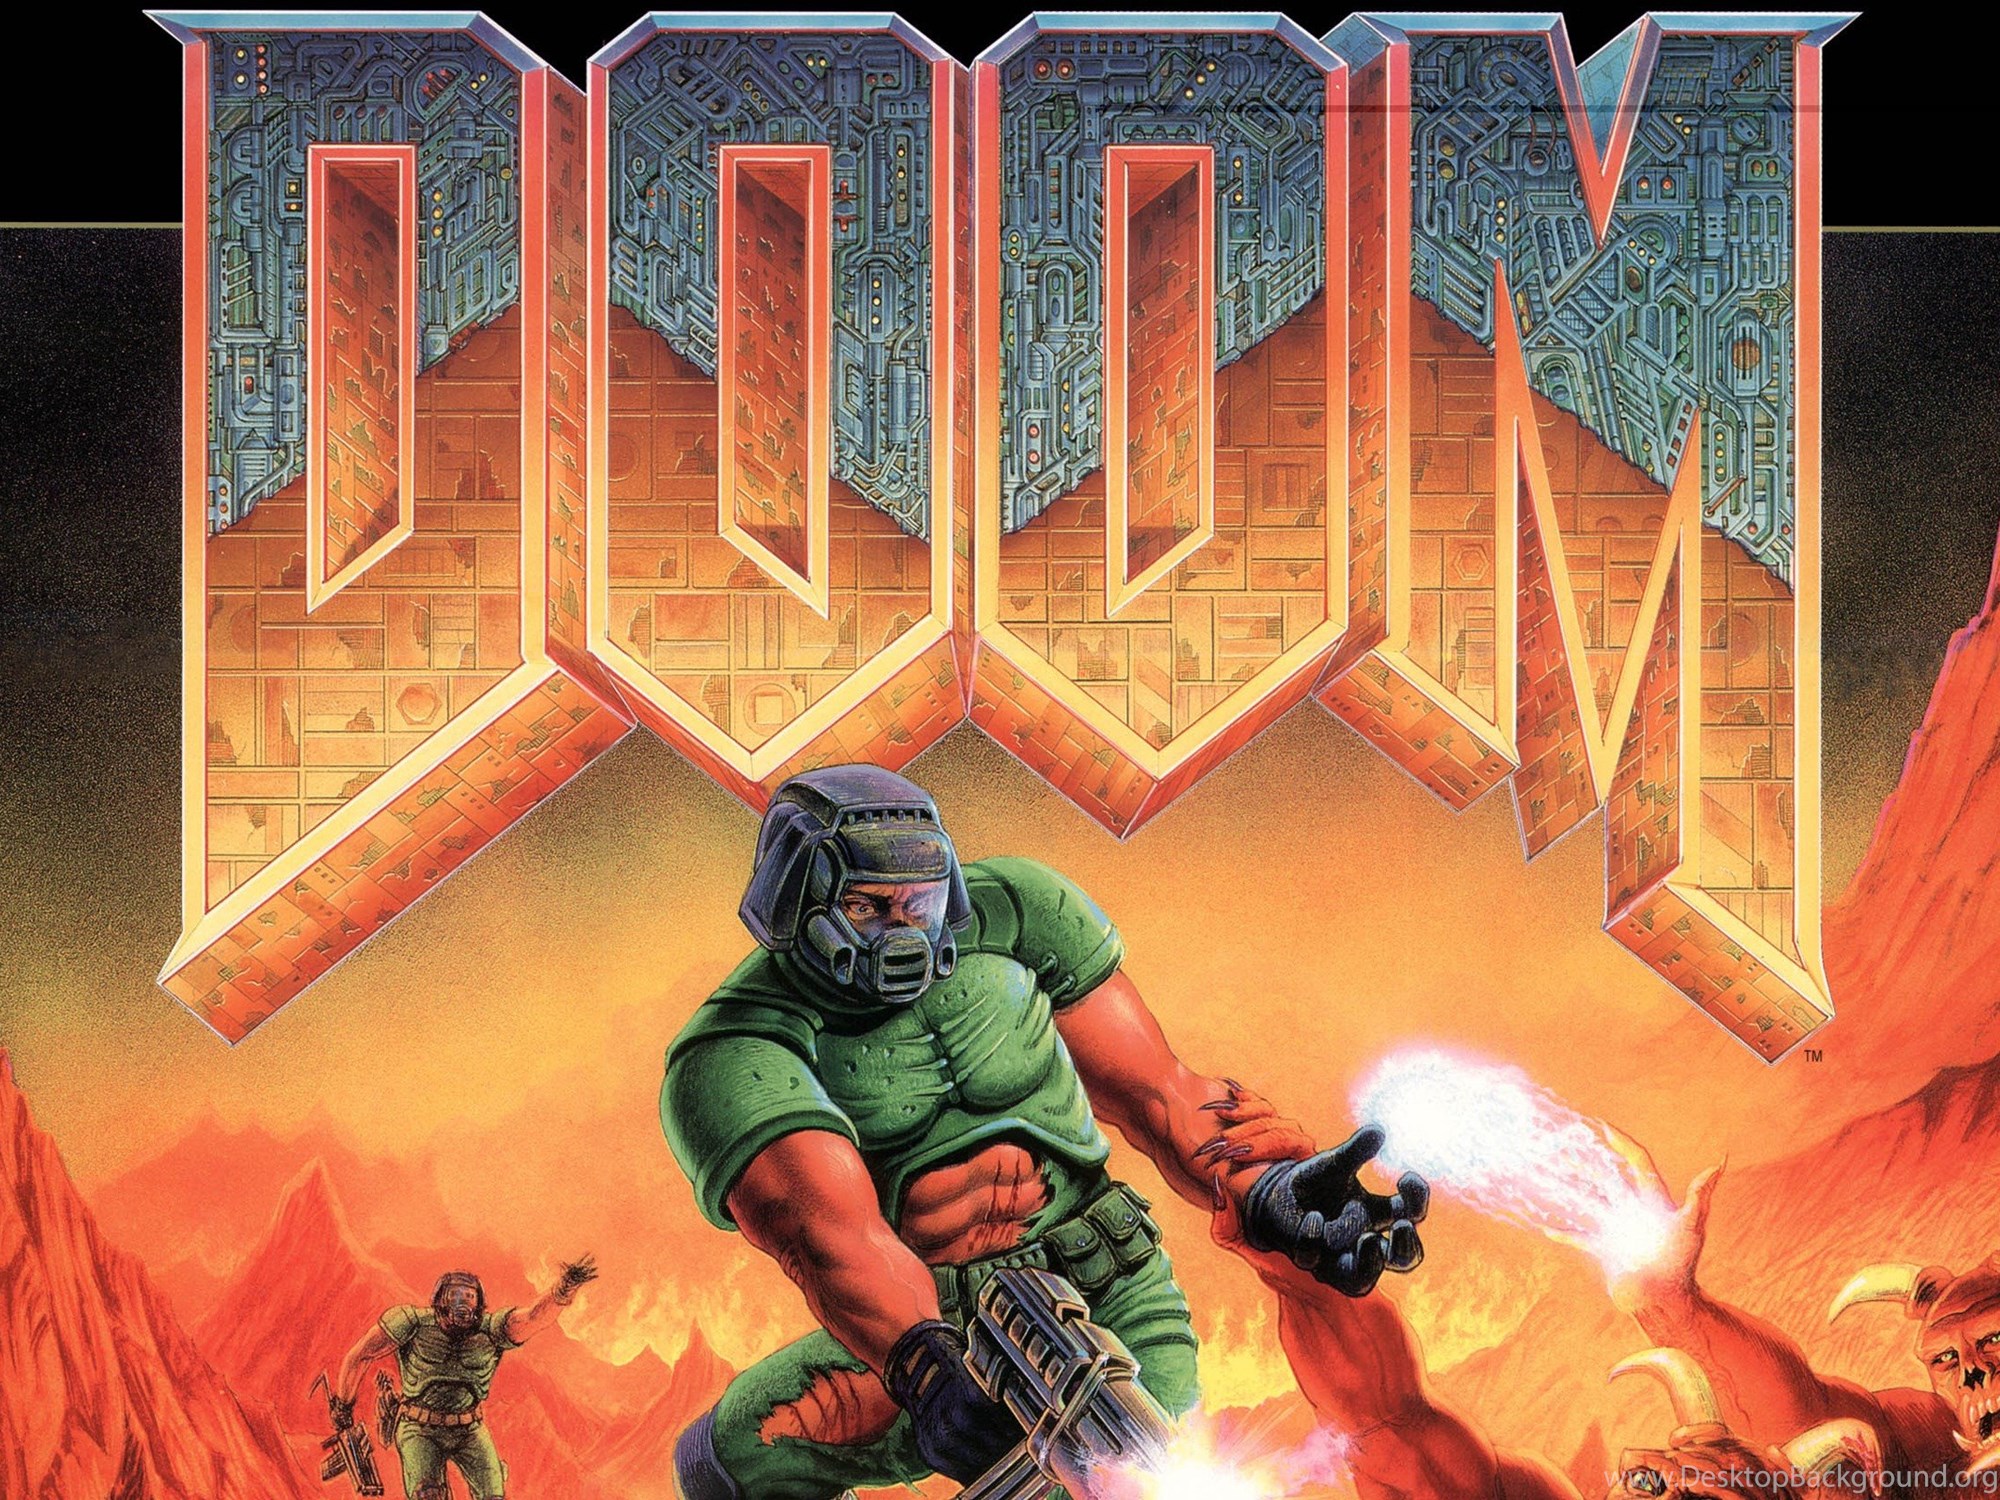 Doom (игра, 1993) обложка полноразмерная. Doom 1993 Intermission Screen. Westside Doom. Дум 64 обложка.